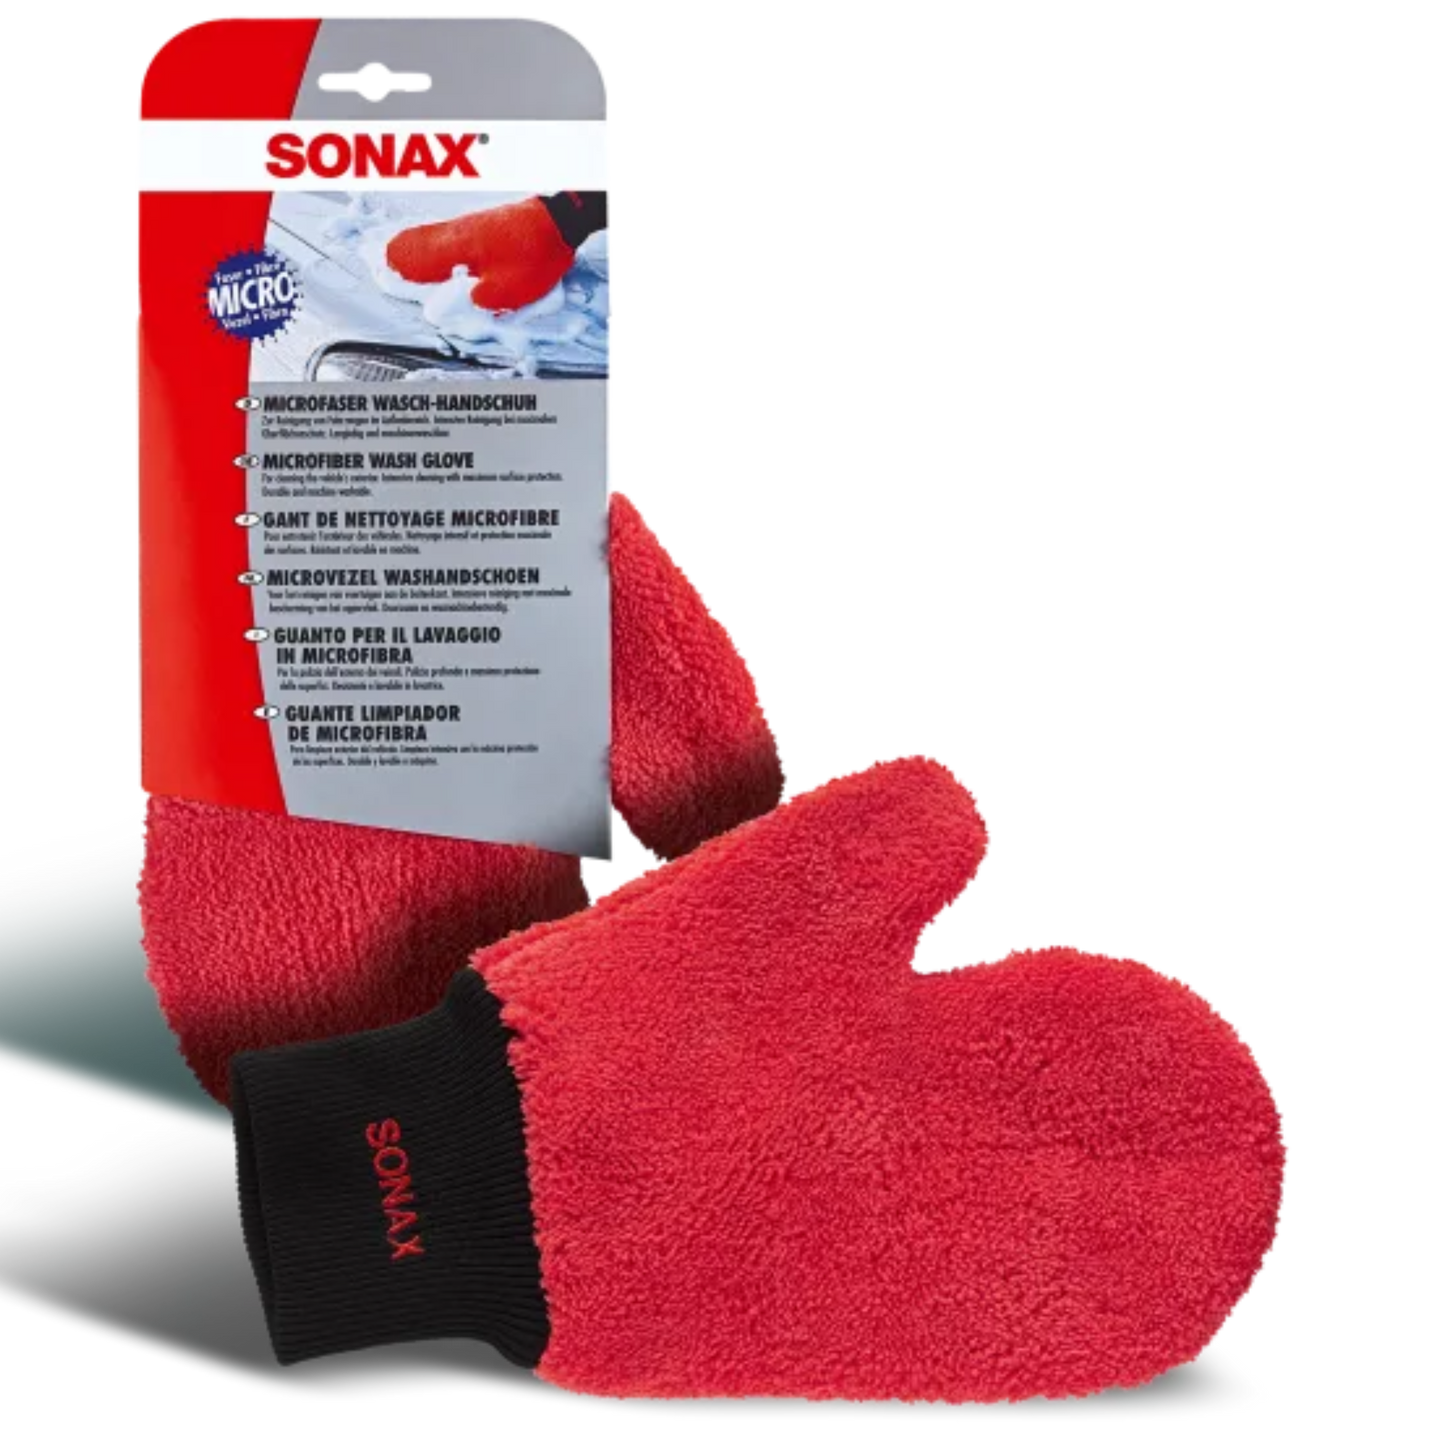 SONAX Microfaser Waschhandschuh